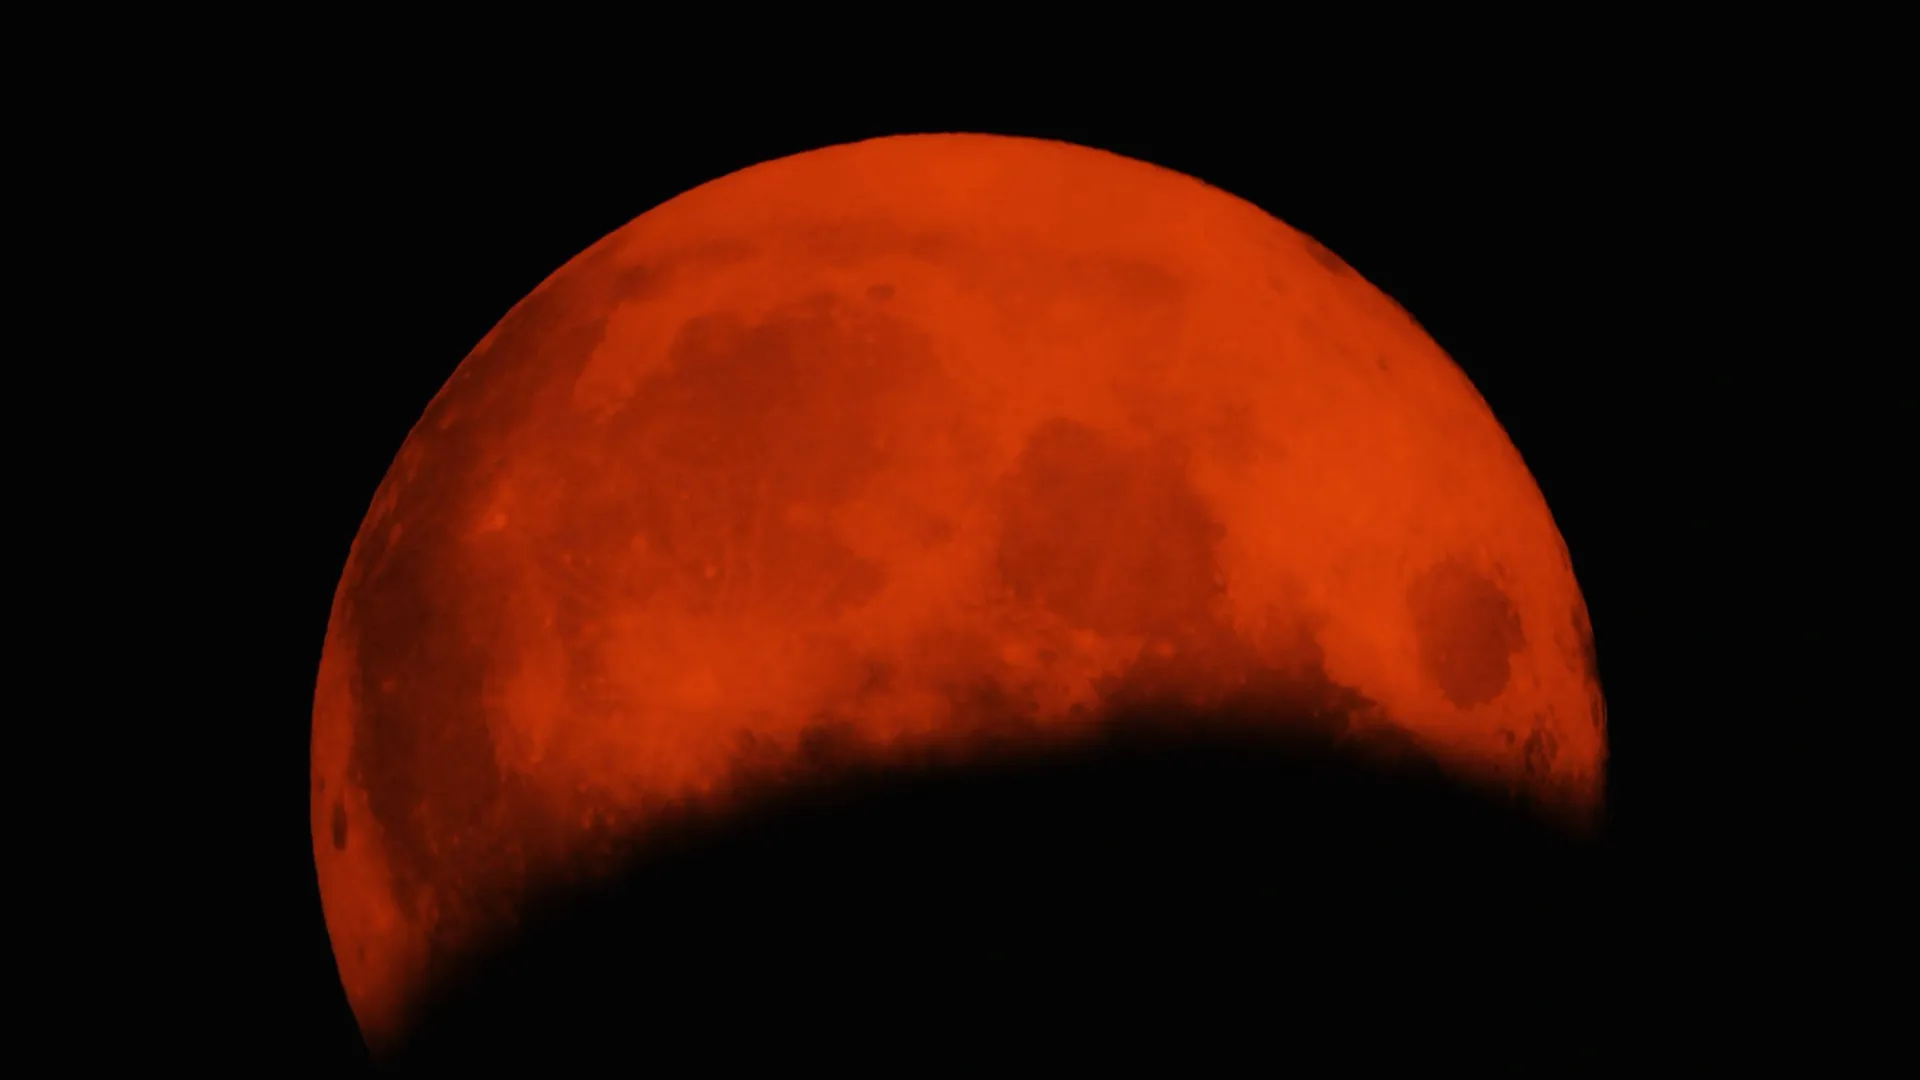 Луна в затмении сильнее всего влияет на эмоции женщин. Фото: pinkfloyd yilmaz uslu/Shutterstock/Fotodom